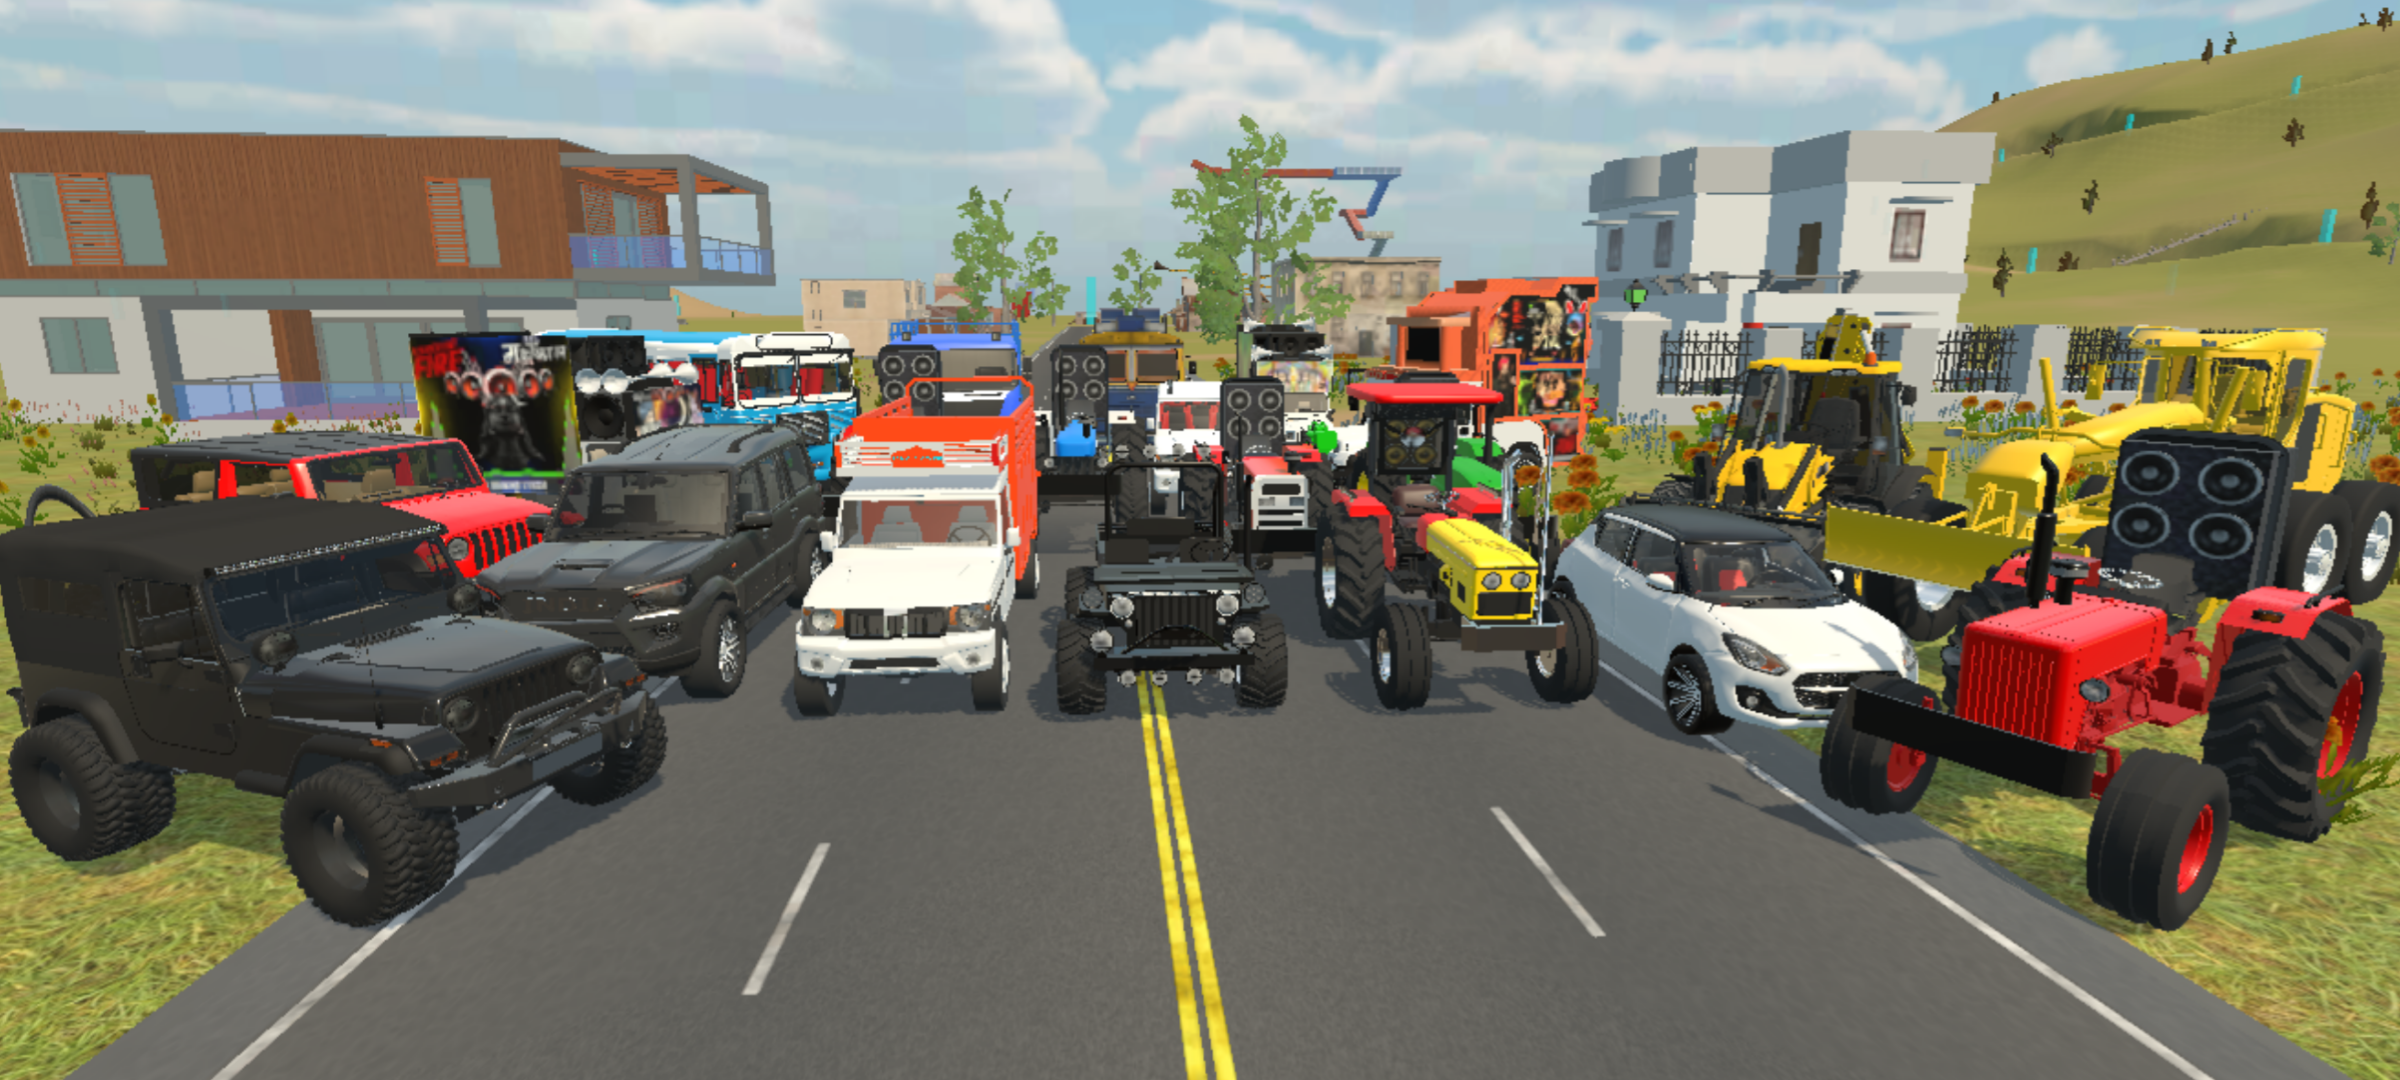 Simulador de carro Vietnã Jogos 3D versão móvel andróide iOS-TapTap